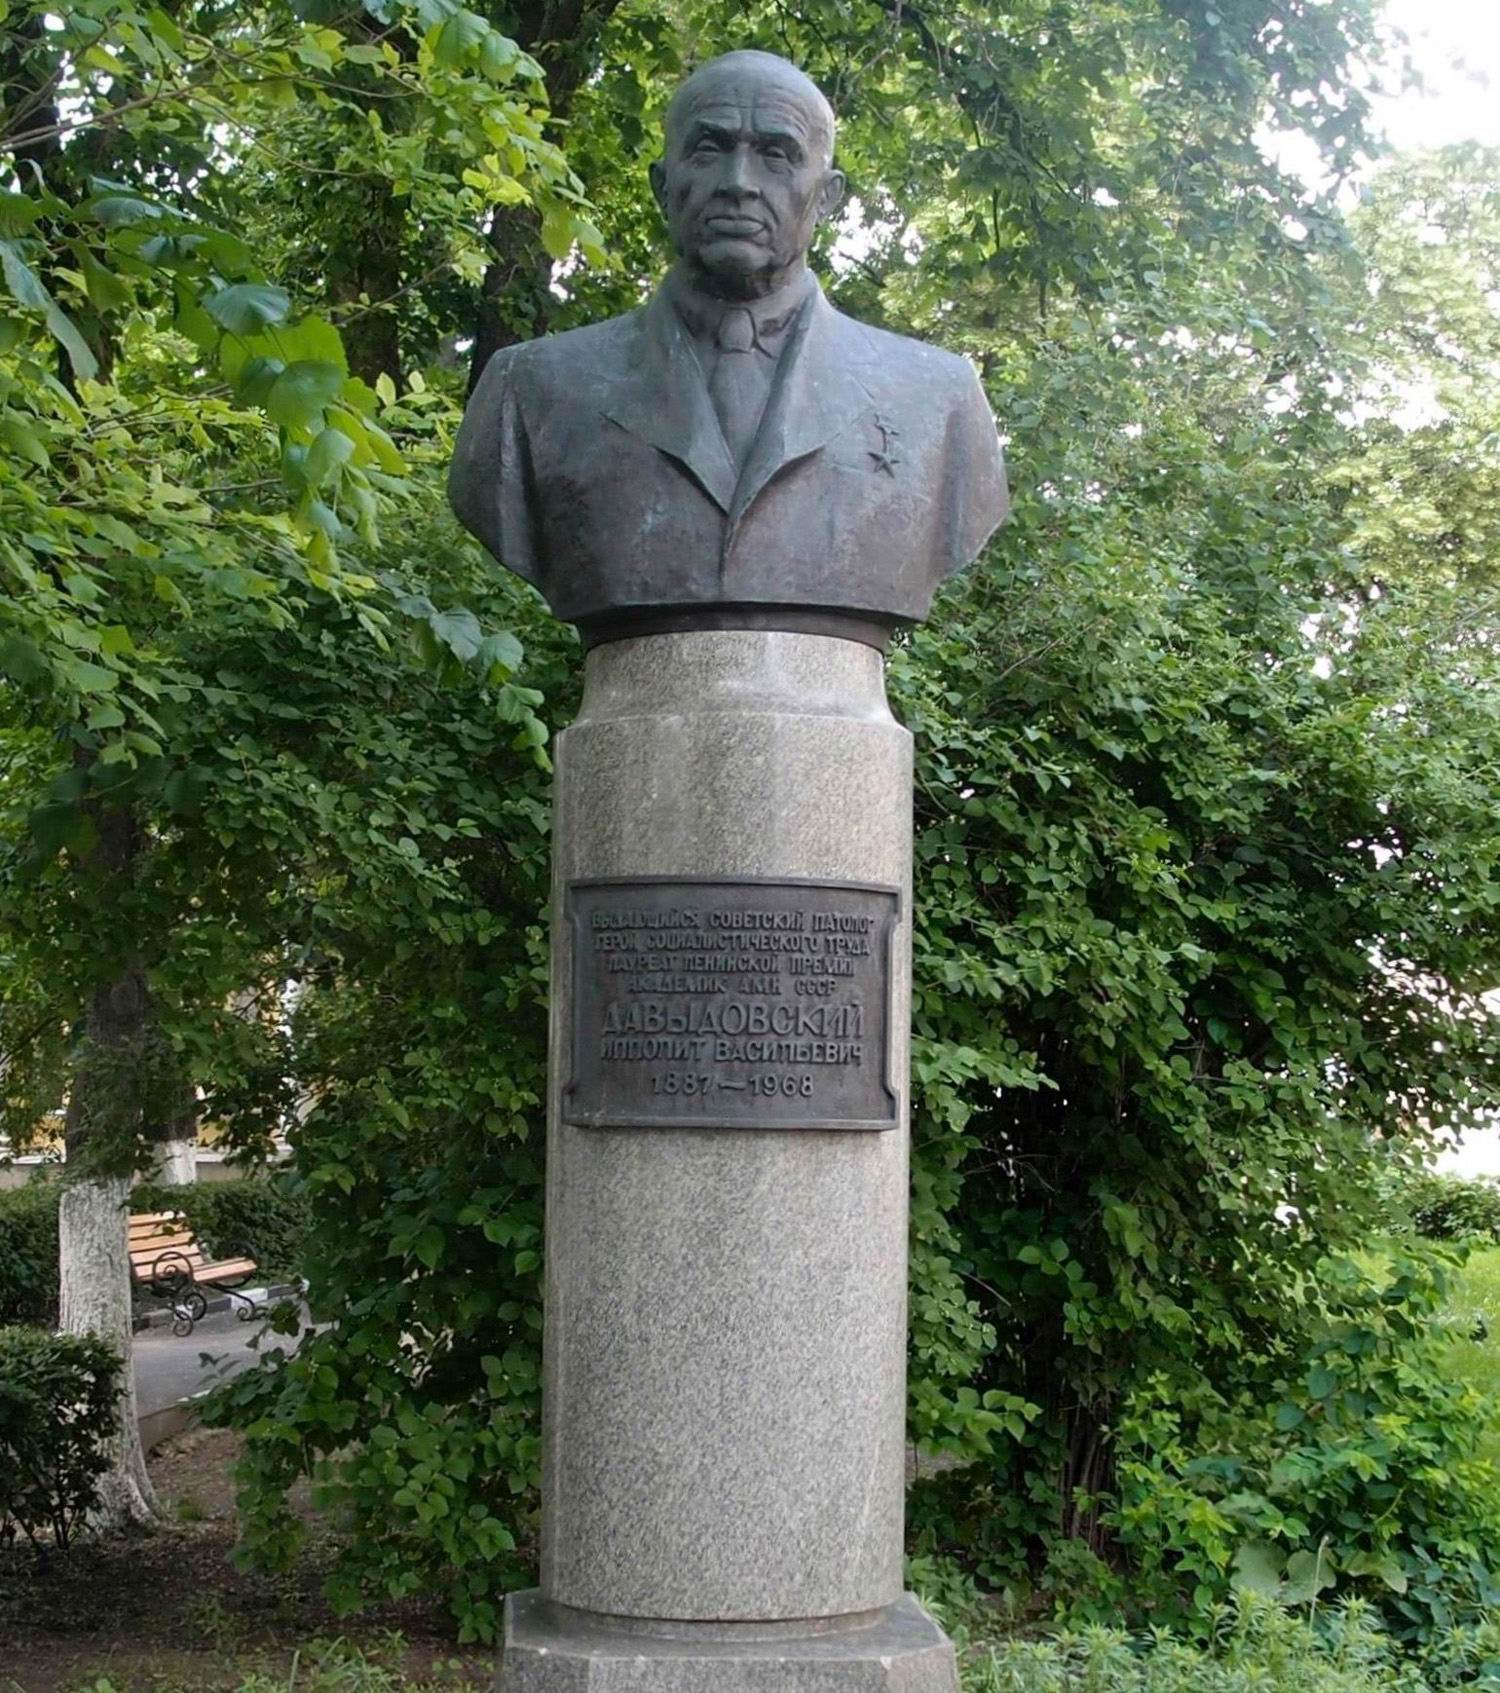 Памятник Давыдовскому И.В. (1887-1968), ск. А.С.Аллахвердянц, арх. А.Г.Захаров, на Яузской улице (Городская клиническая больница № 23 им. Медсантруд), открыт в 1974.